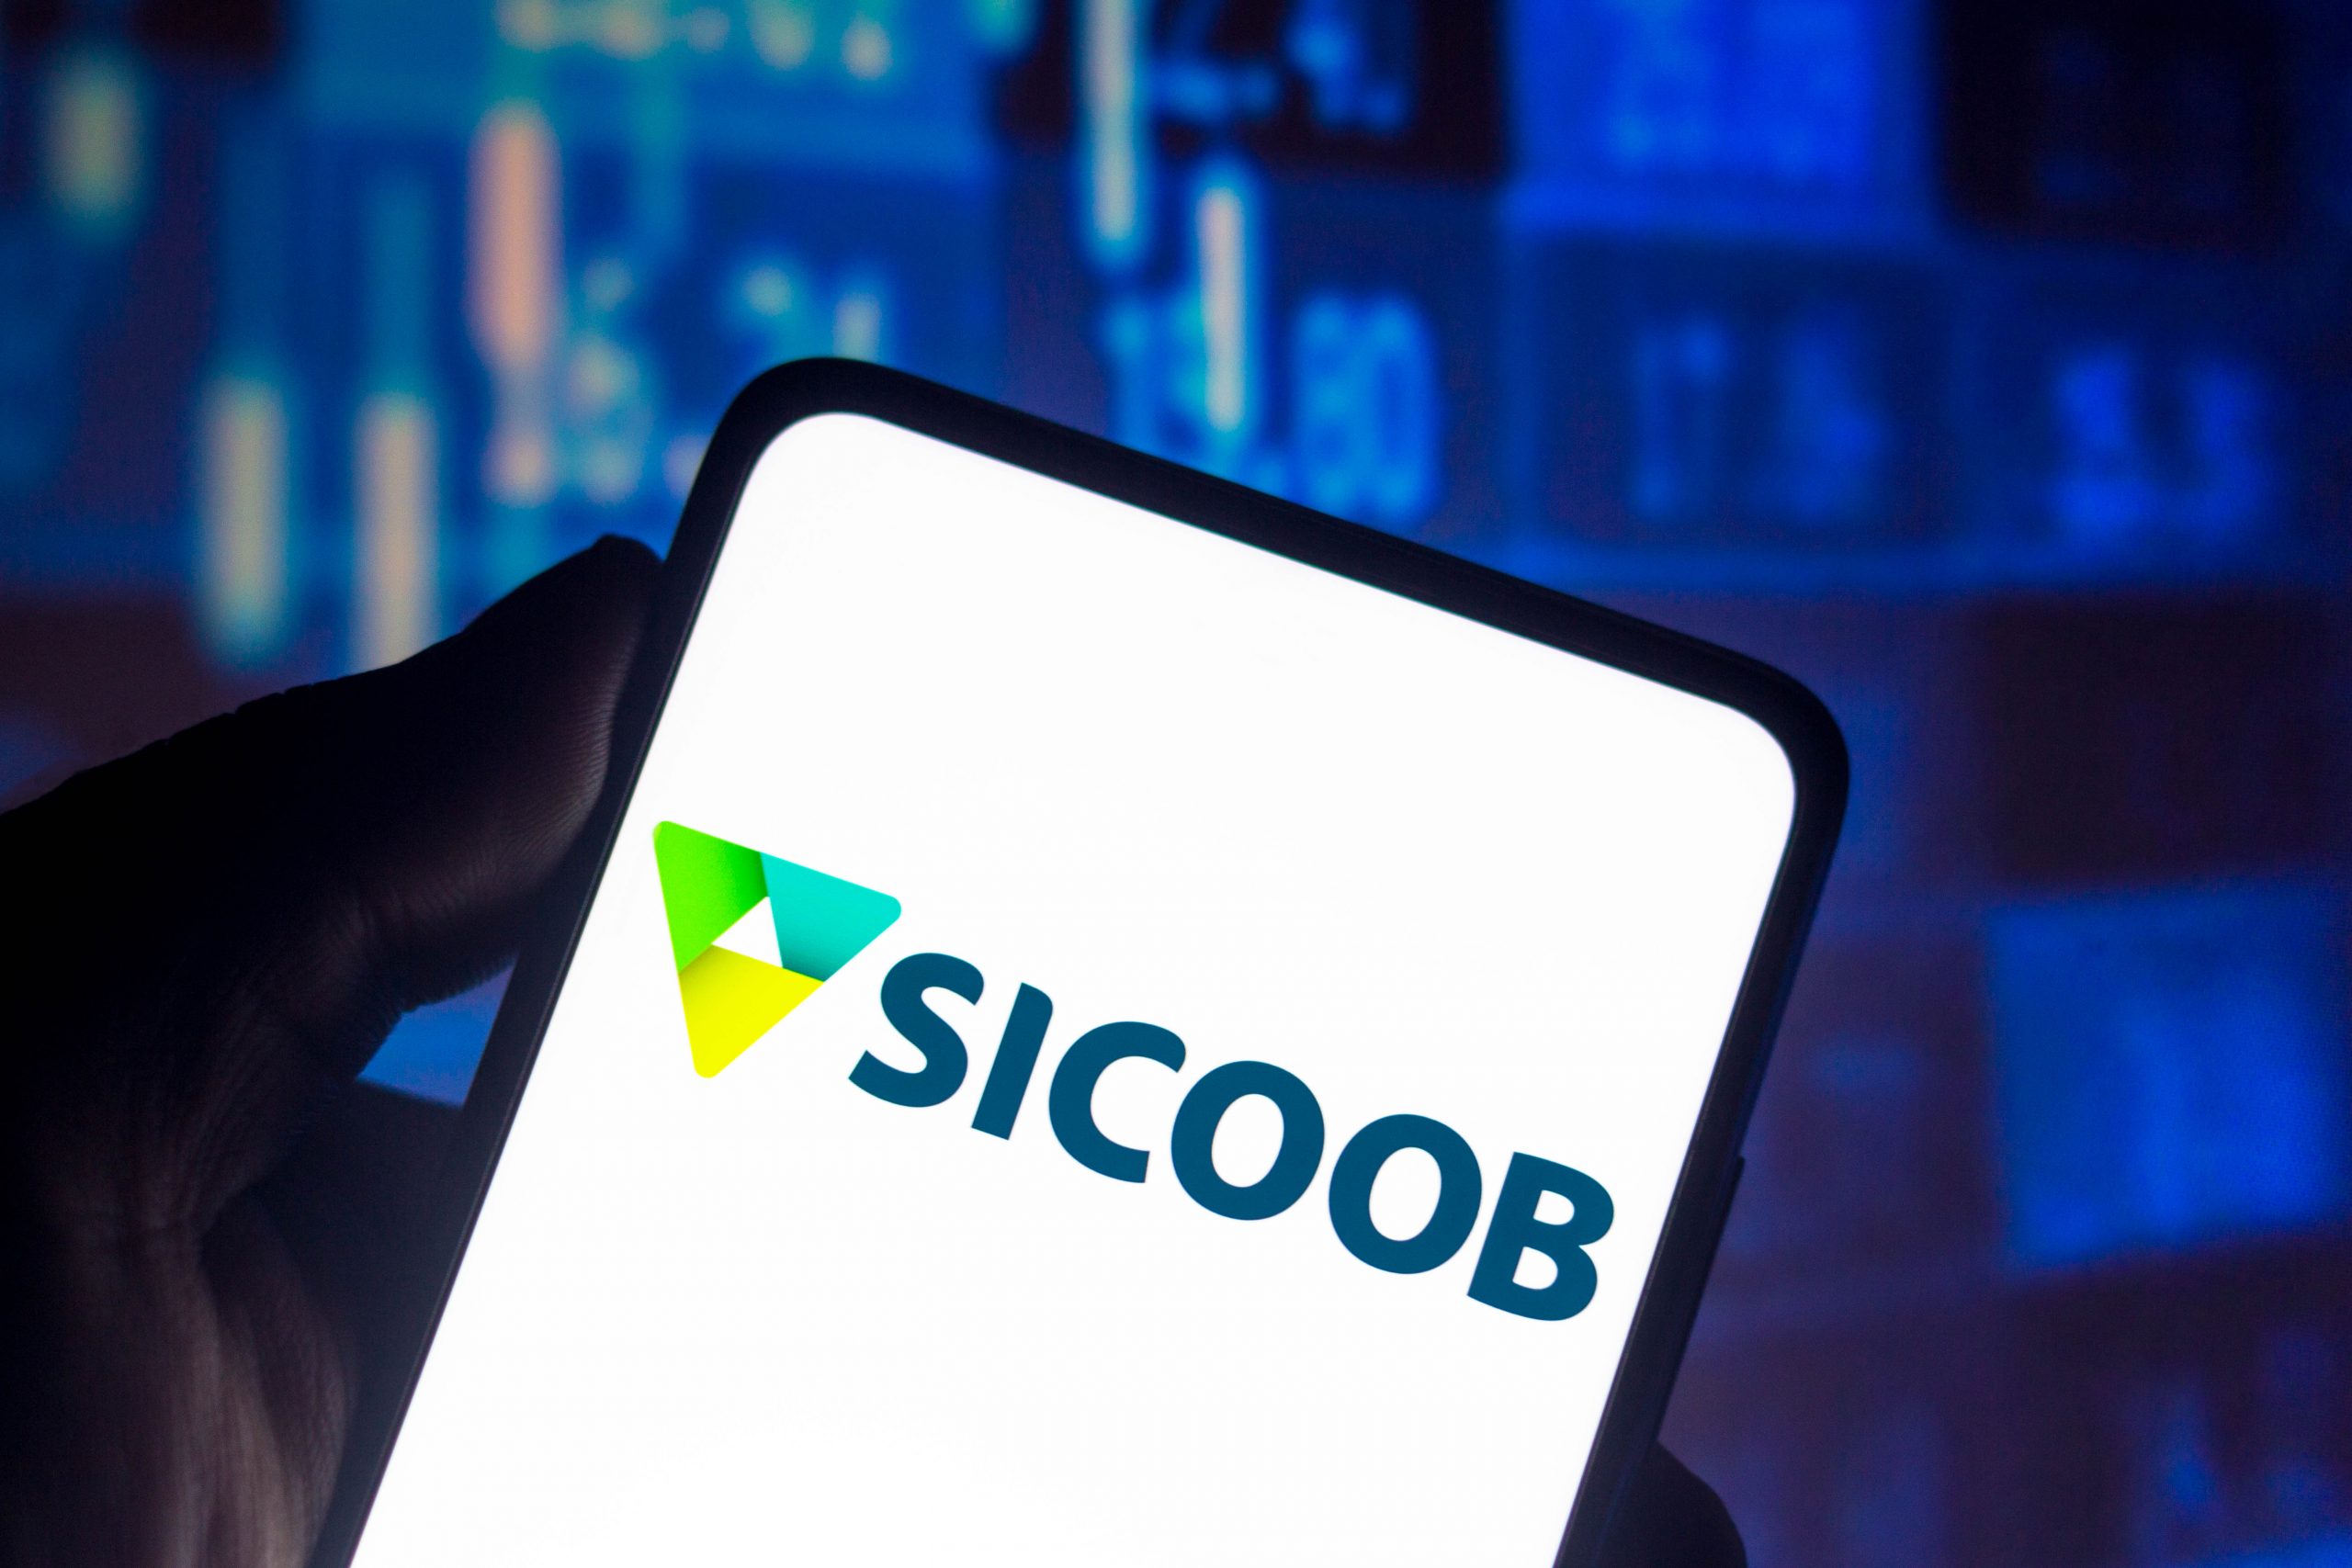 Sicoob chega a 200 mil consentimentos ativos e lança produtos inovadores